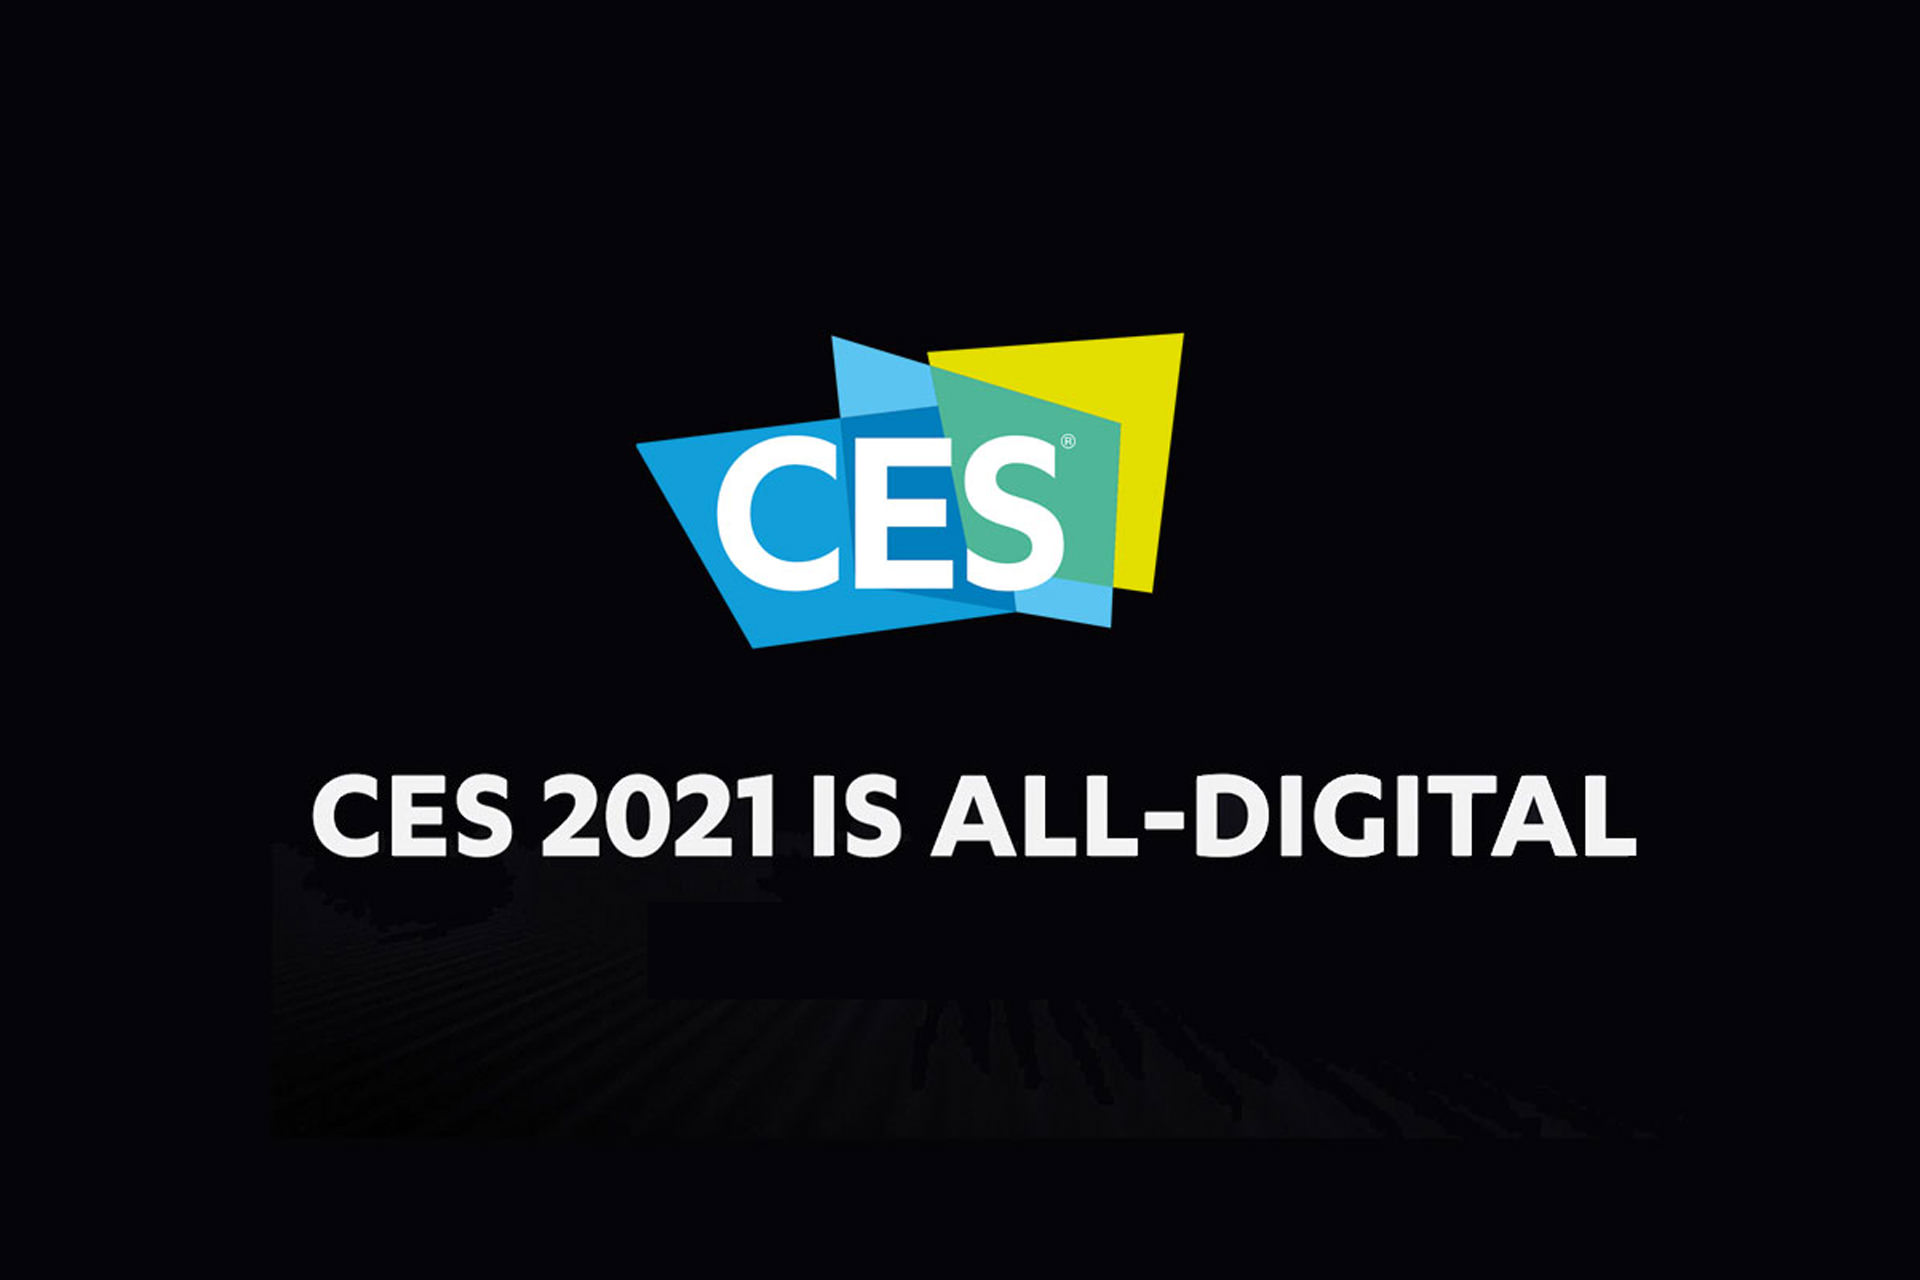 نمایشگاه CES 2021 کاملا دیجیتالی است